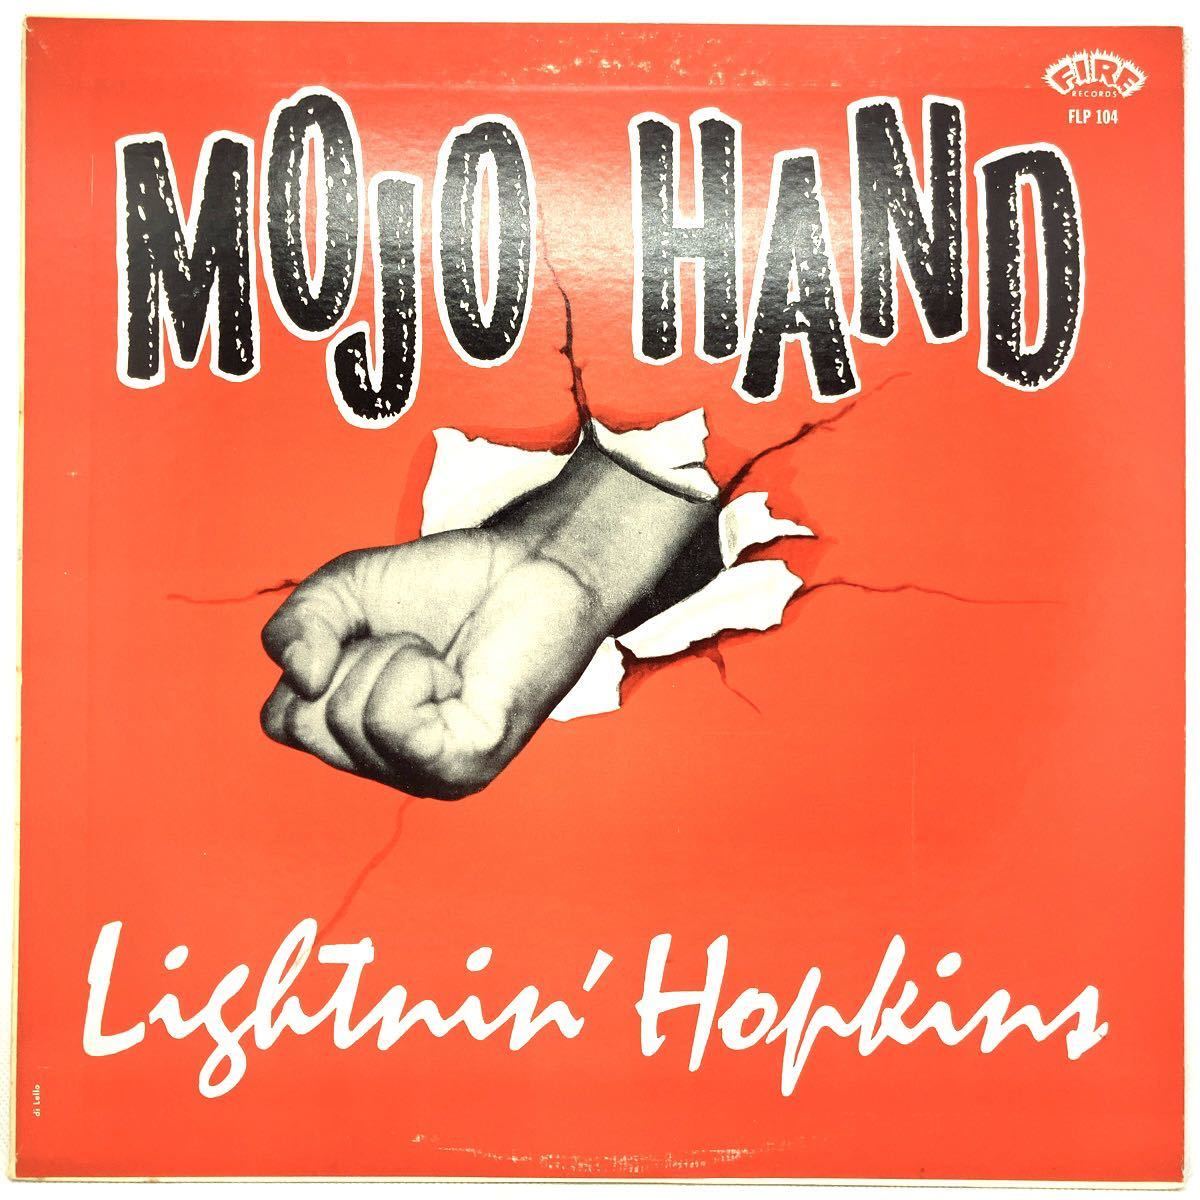 Lightnin' Hopkins - Mojo Hand 国内盤 LP レコード ライトニン・ホプキンス モージョ・ハンド BLUES ブルースの画像1